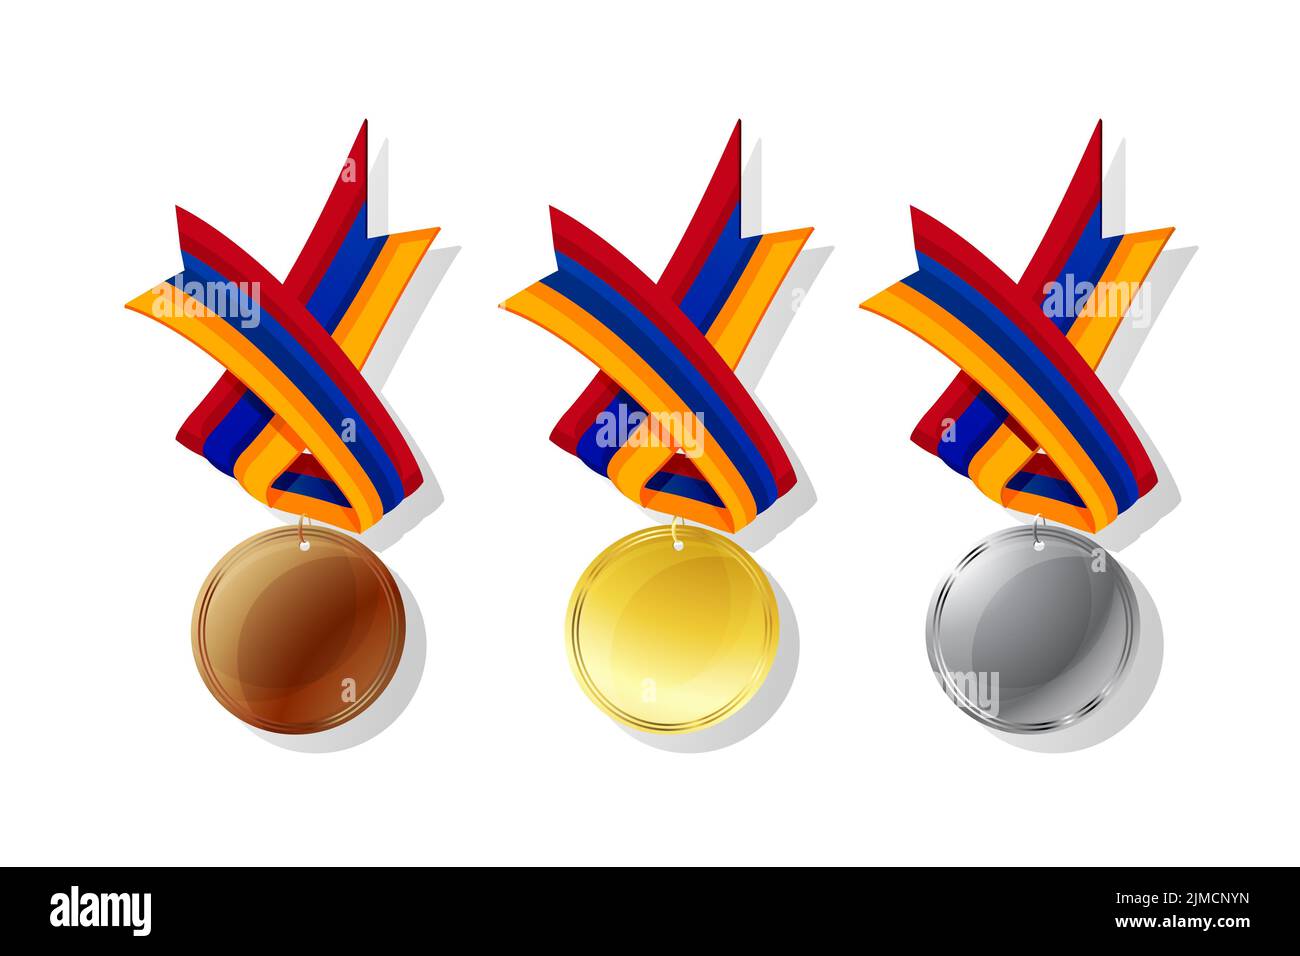 Médailles arménienne en or, argent et bronze avec drapeau national. Les objets vectoriels isolé sur fond blanc Banque D'Images